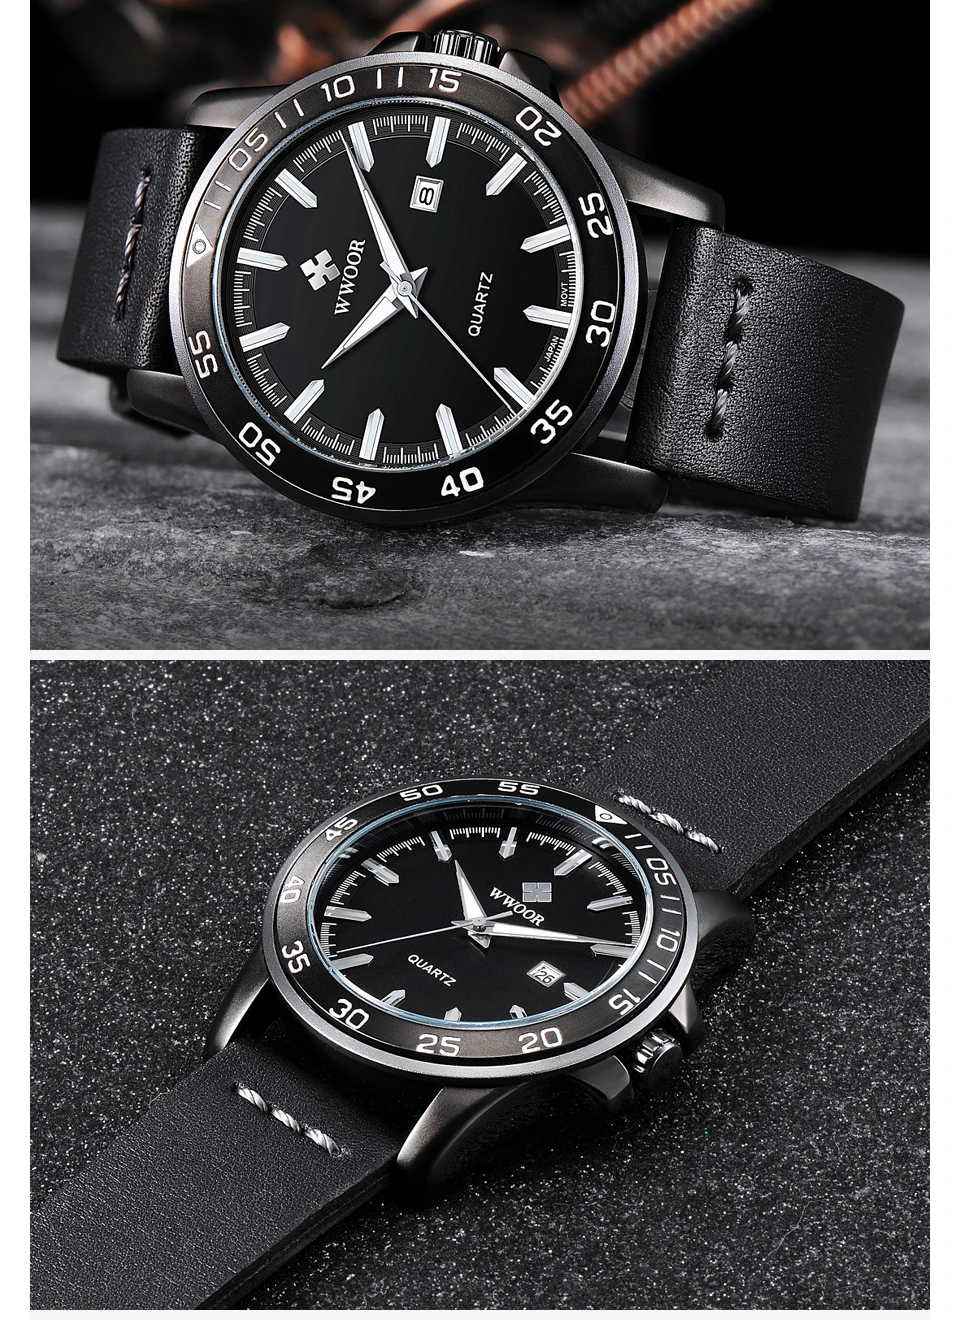 WWOOR лучший бренд класса люкс для мужчин водостойкие спортивные часы для мужчин кварцевые Дата часы мужской кожаный Военная Униформа